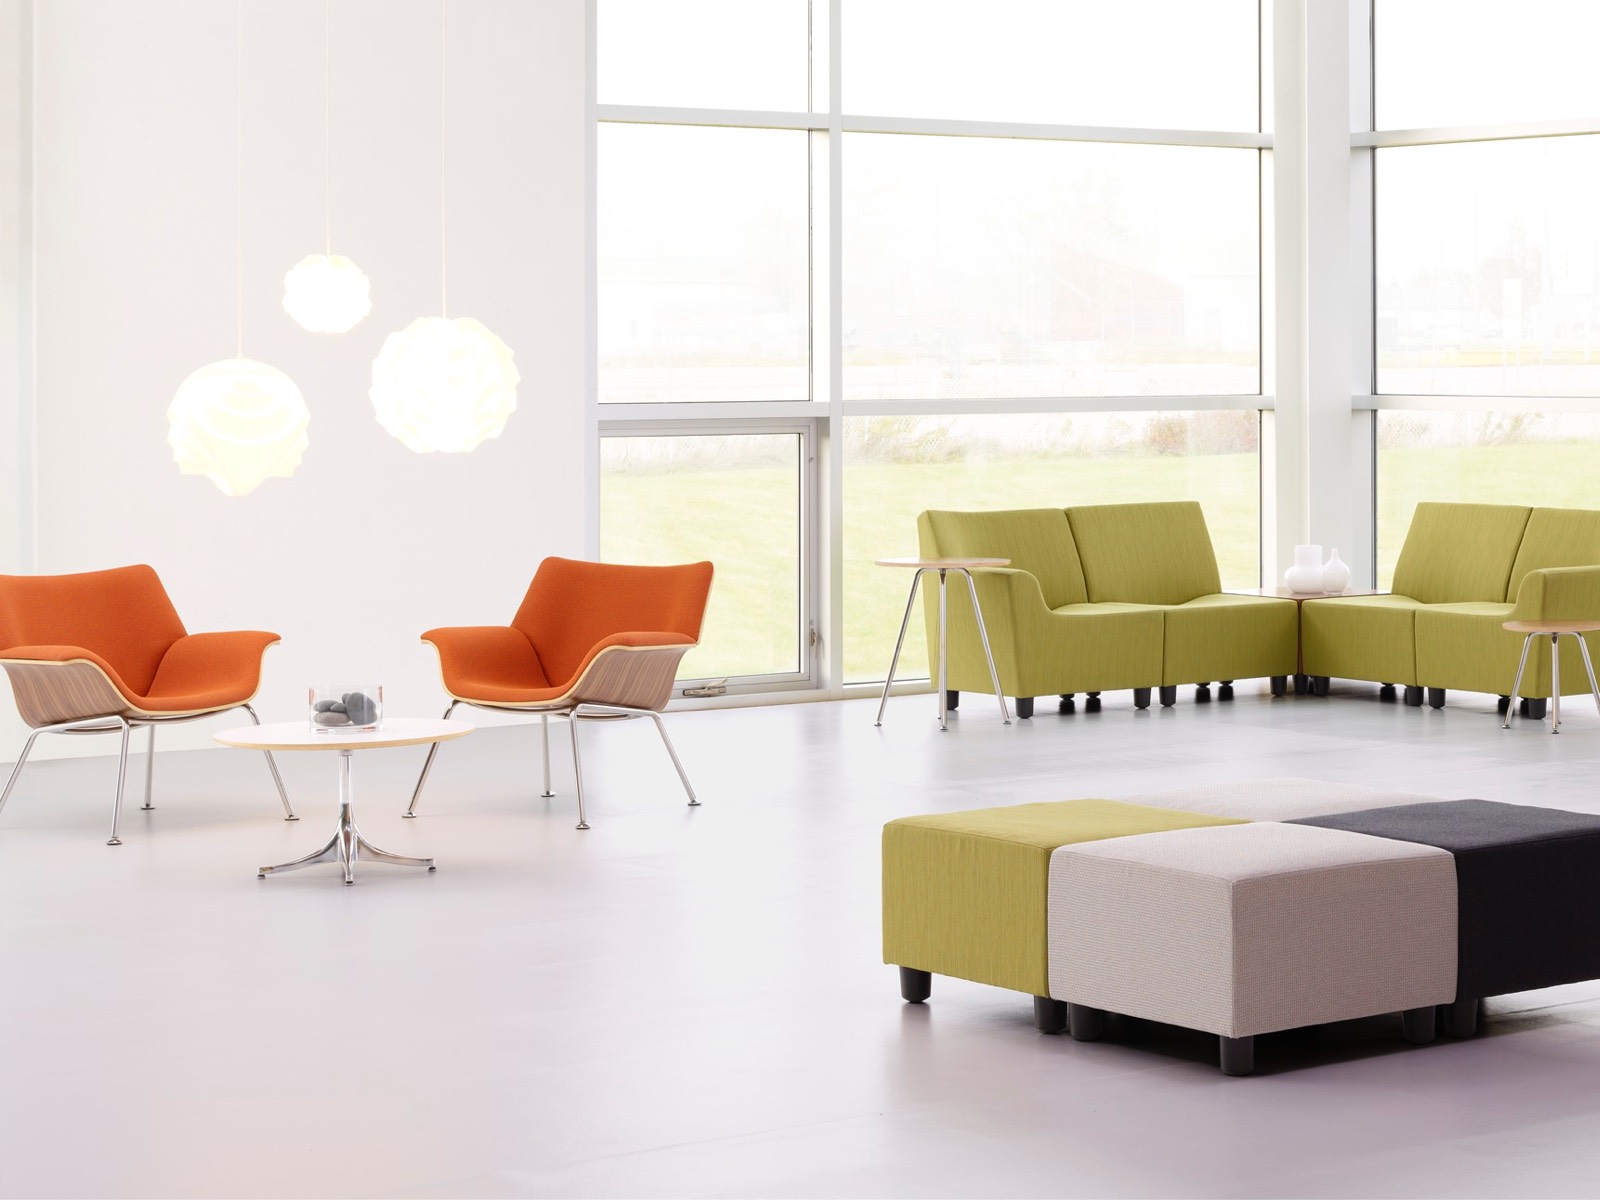 Des chaises longues Orange Swoop et des sièges modulaires Swoop vert dans un espace de réunion décontracté.